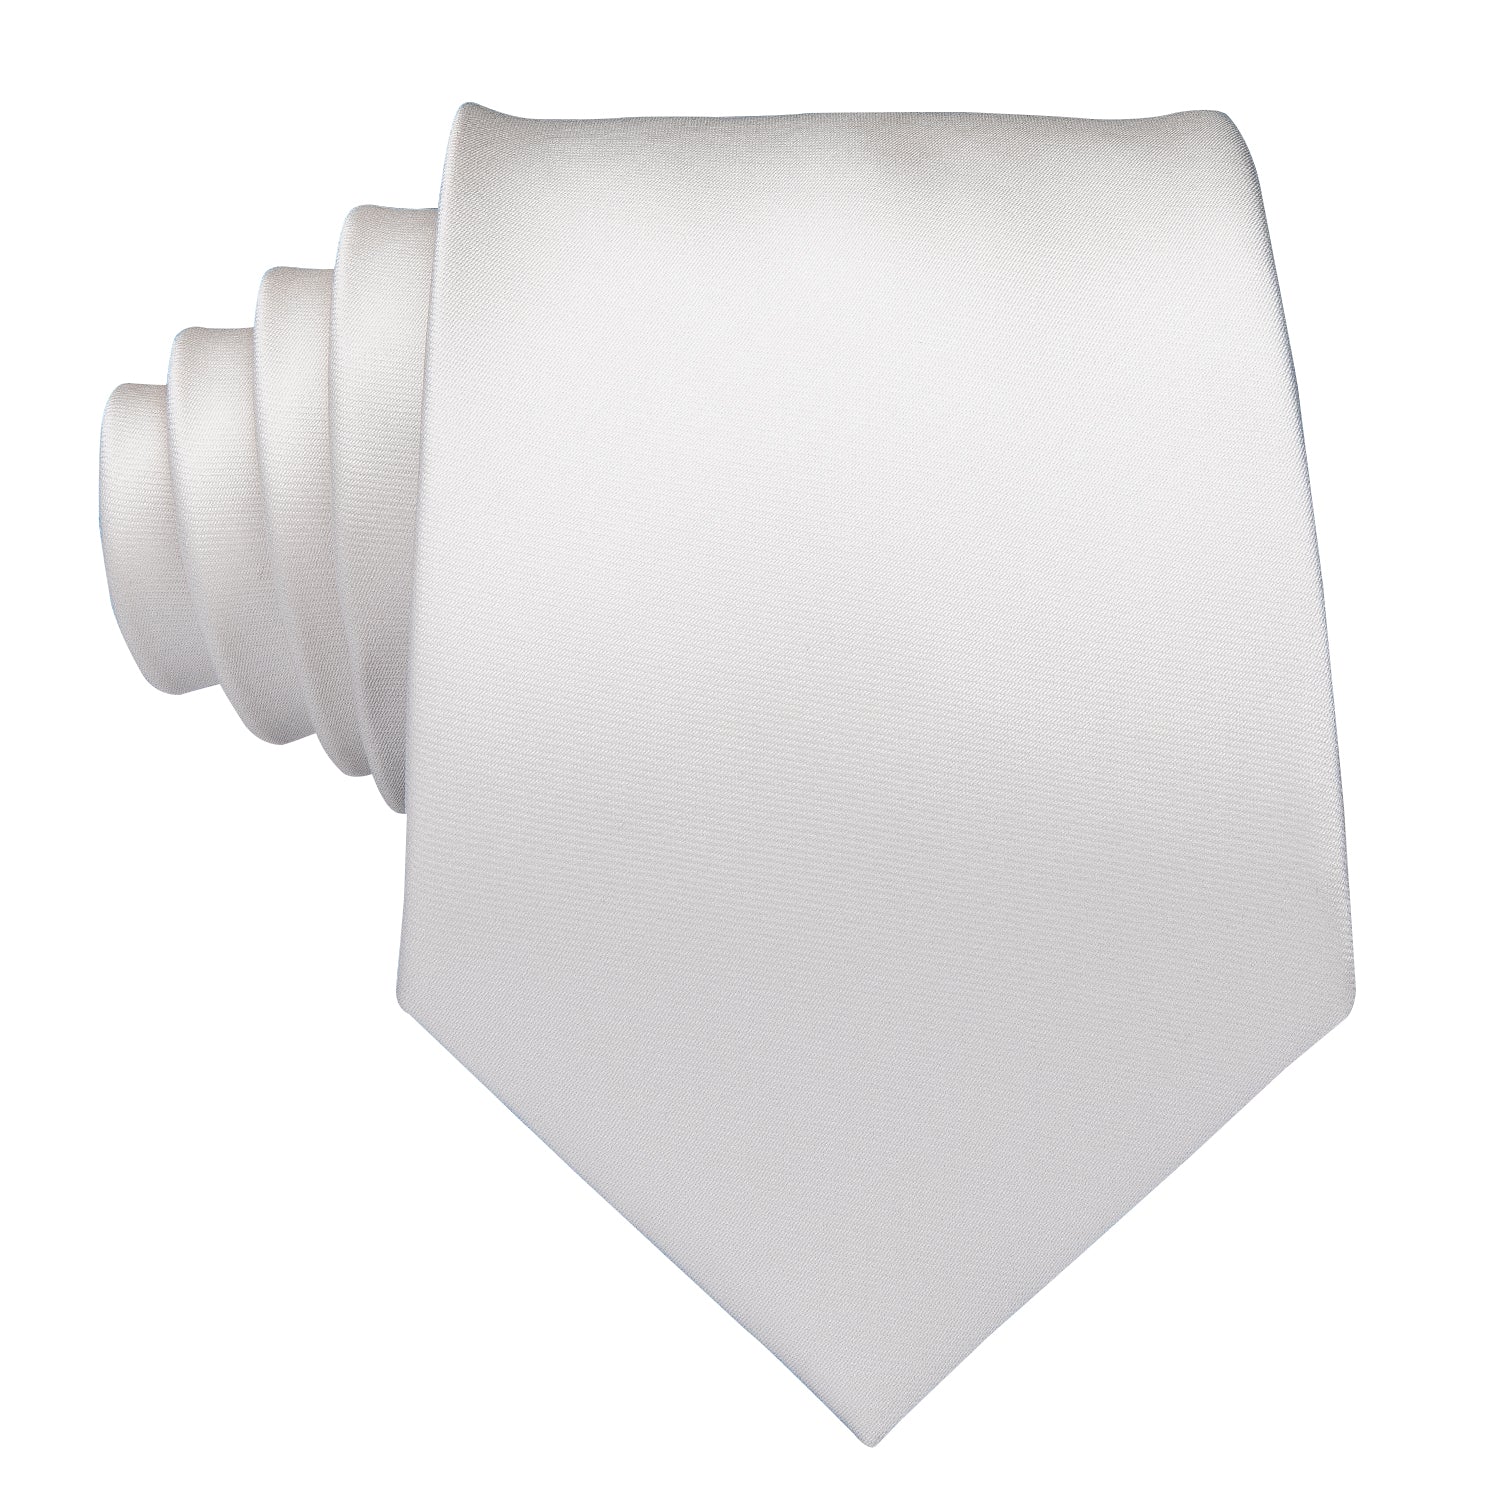 Solid Milky White Tie Pocket Square Cufflinks Set